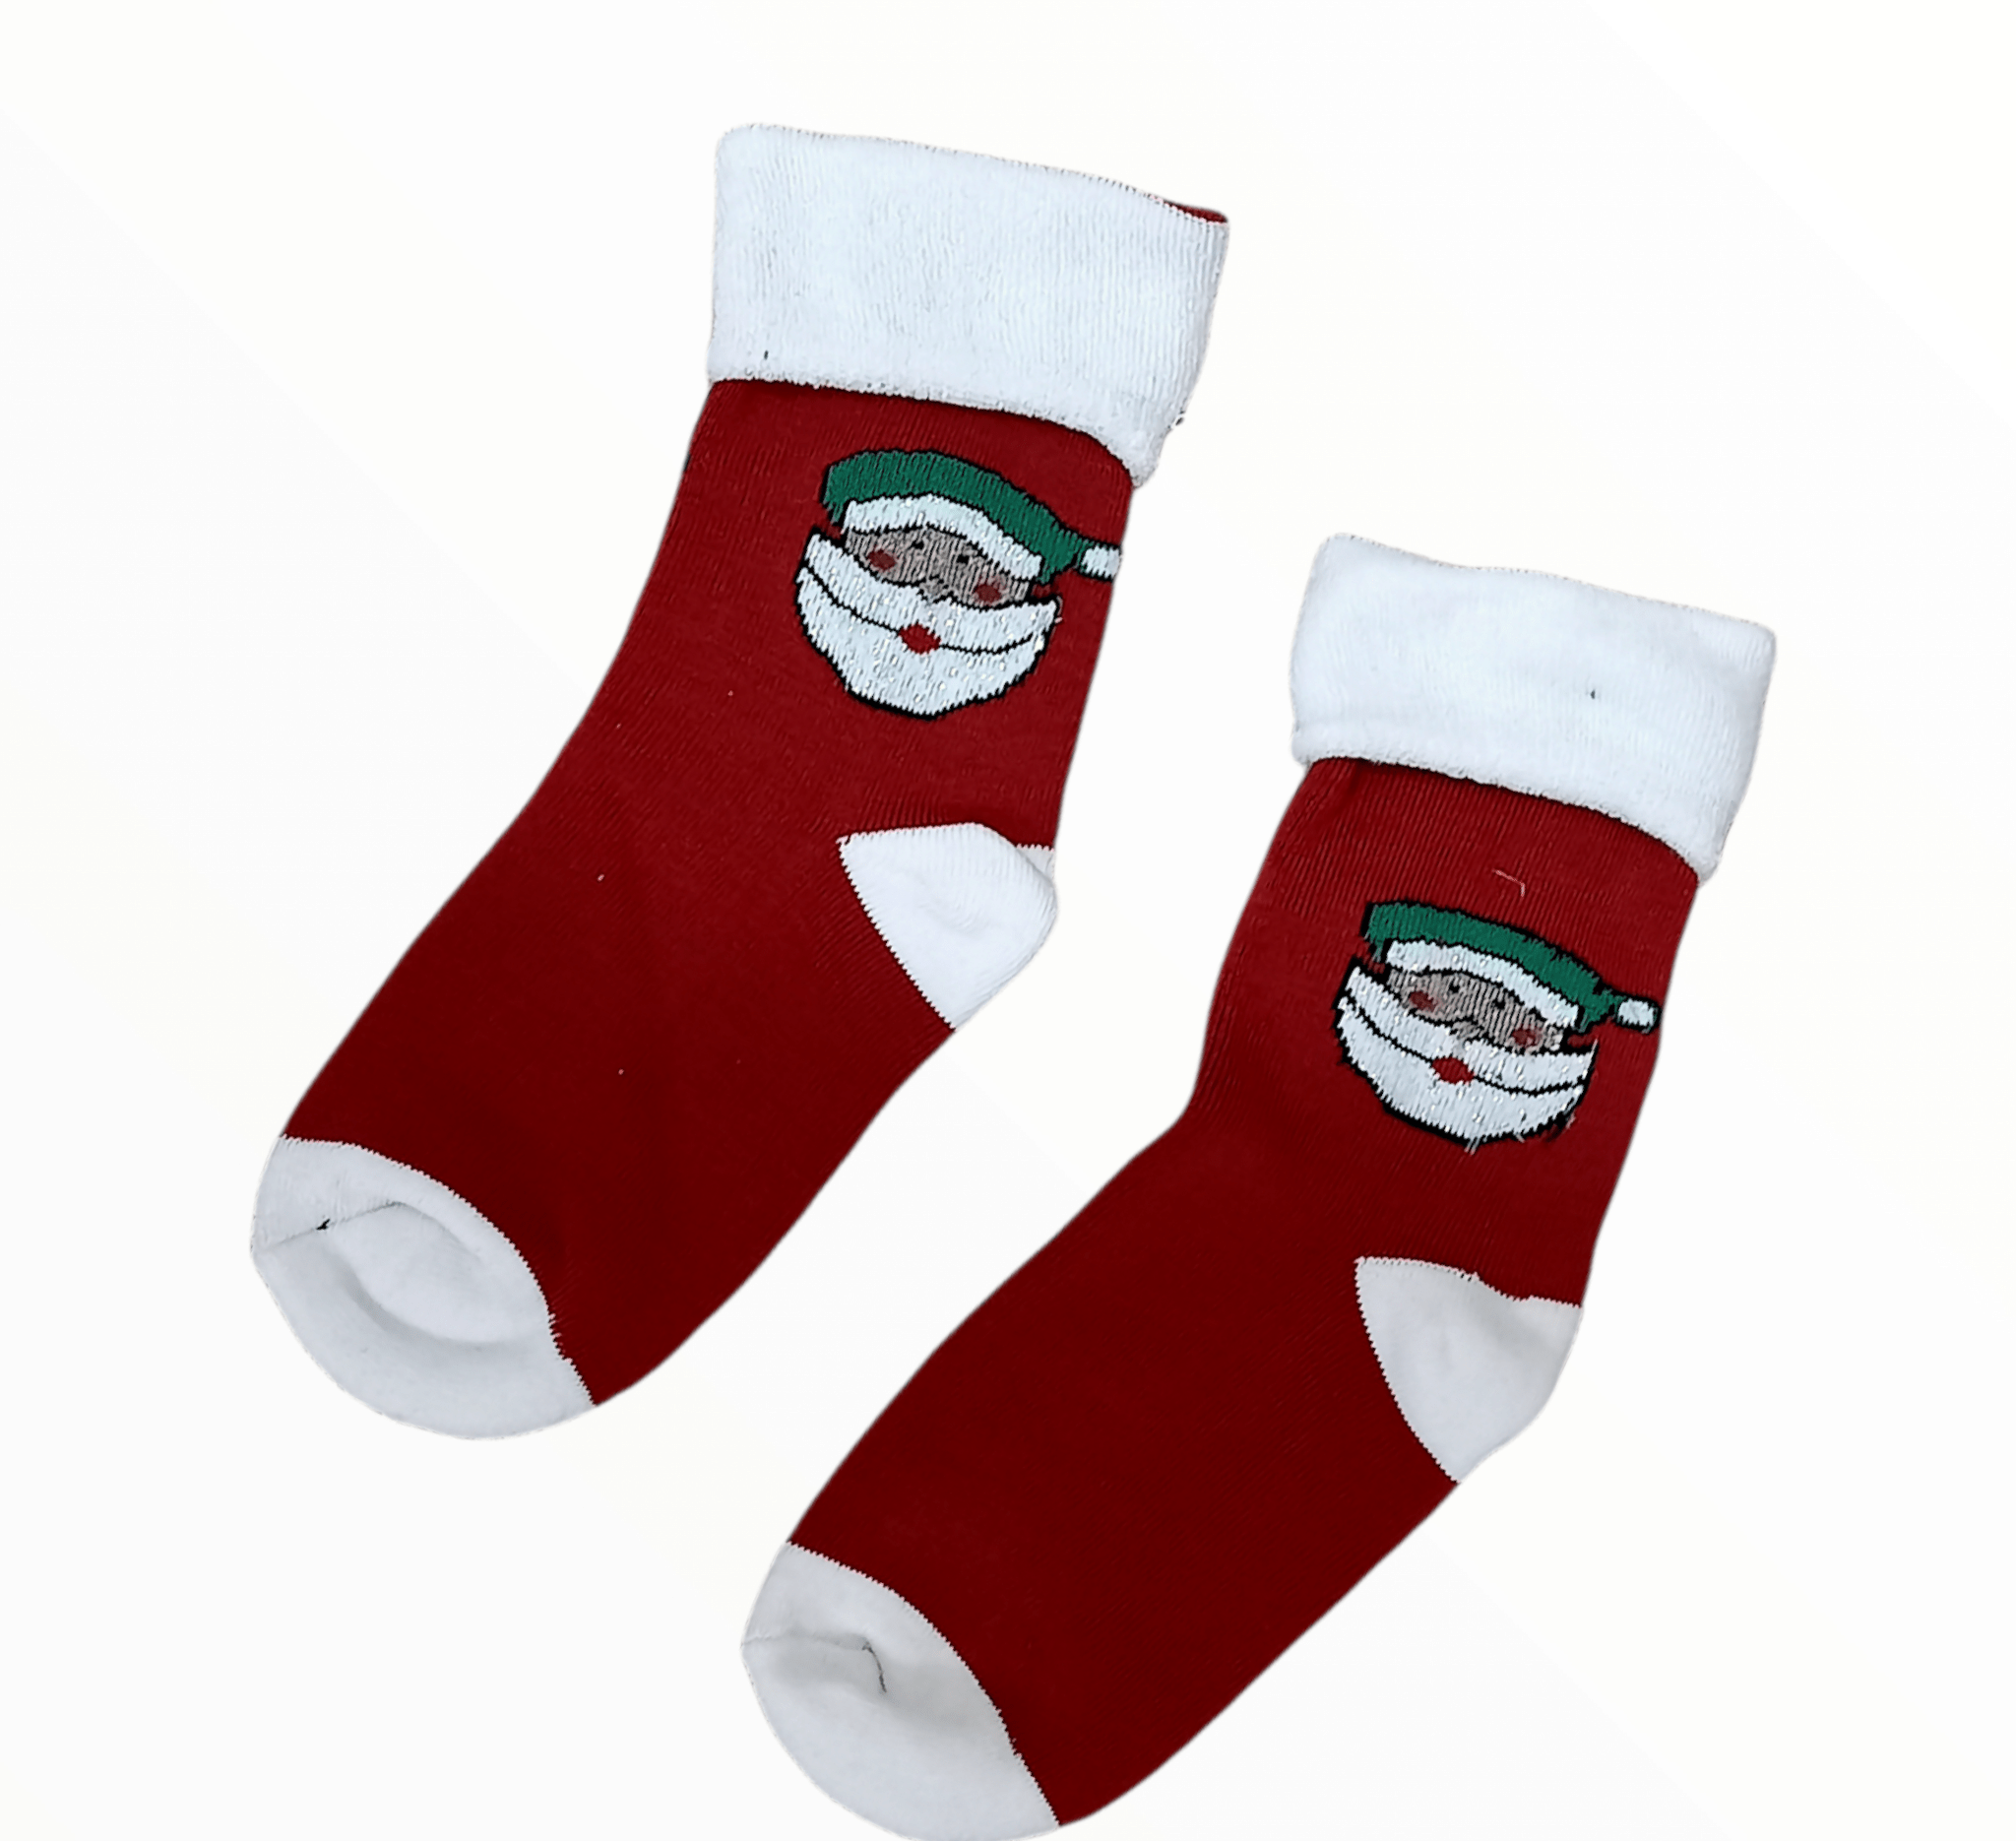 ElOutlet (Unisex - Men & Women) Christmas Socks - One-Size - 6